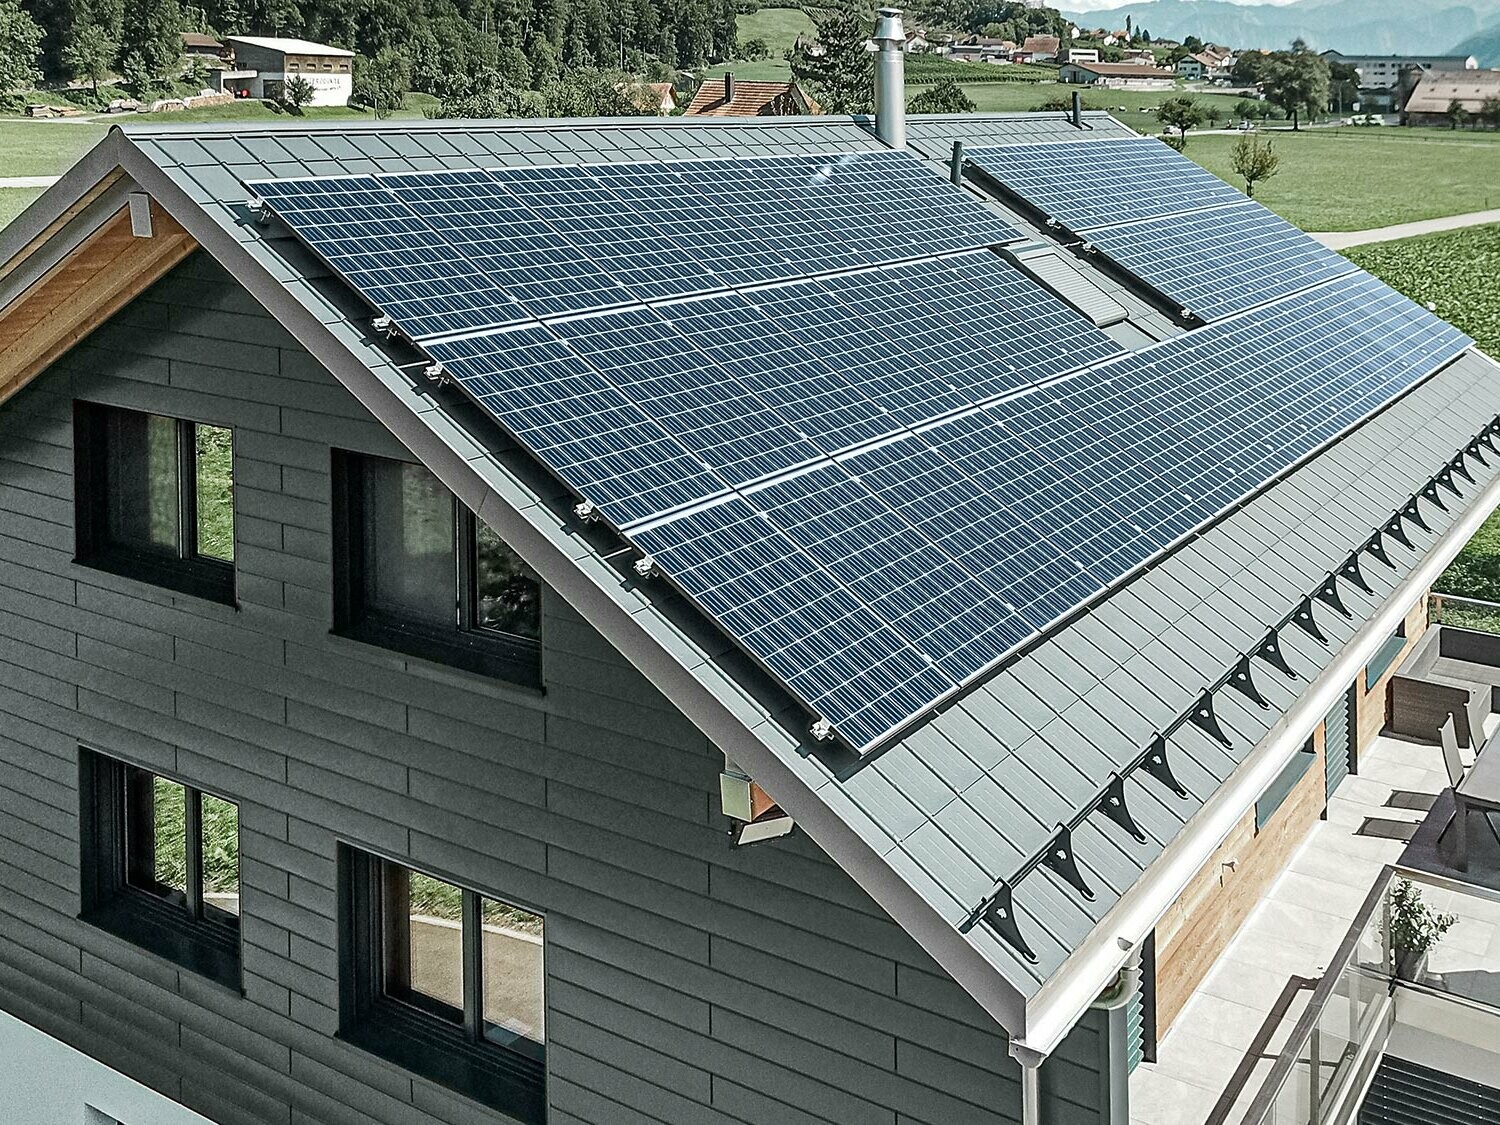 Impianto fotovoltaico montato su tetto PREFA con staffe e binario per una tenuta sicura.